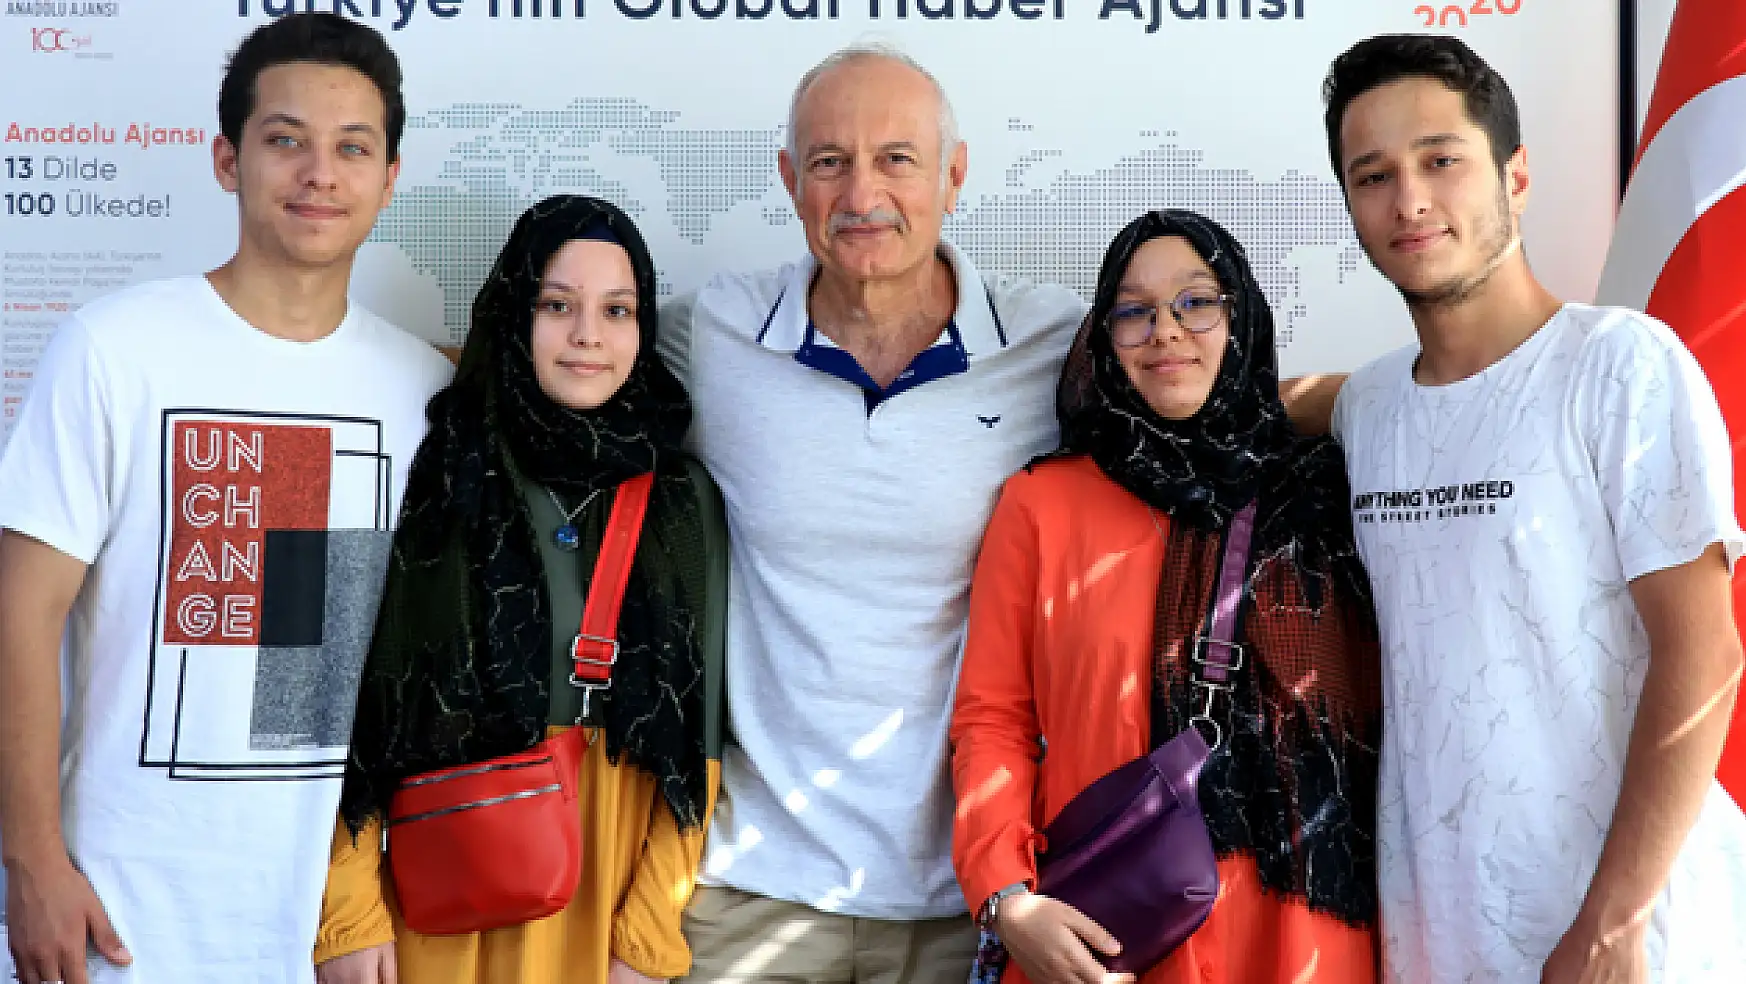 Konya'da doğan Mersinli dördüzlerin 19 yıllık doktor vefası